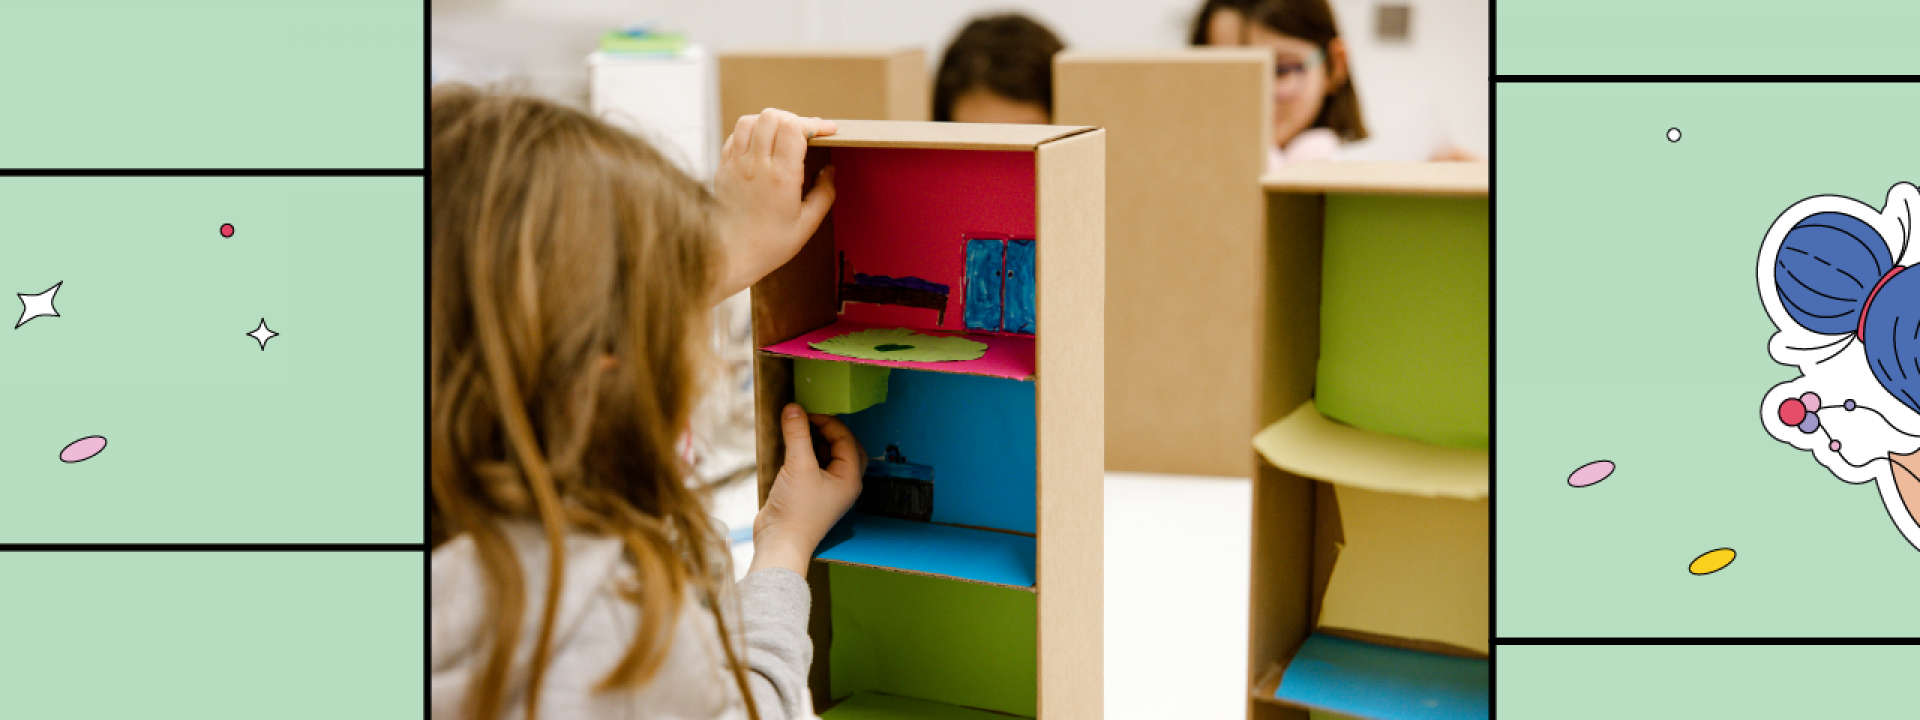 Εργαστήριο αρχιτεκτονικής για παιδιά: Κατασκευάζω σε τρεις κλίμακες - Εικόνα